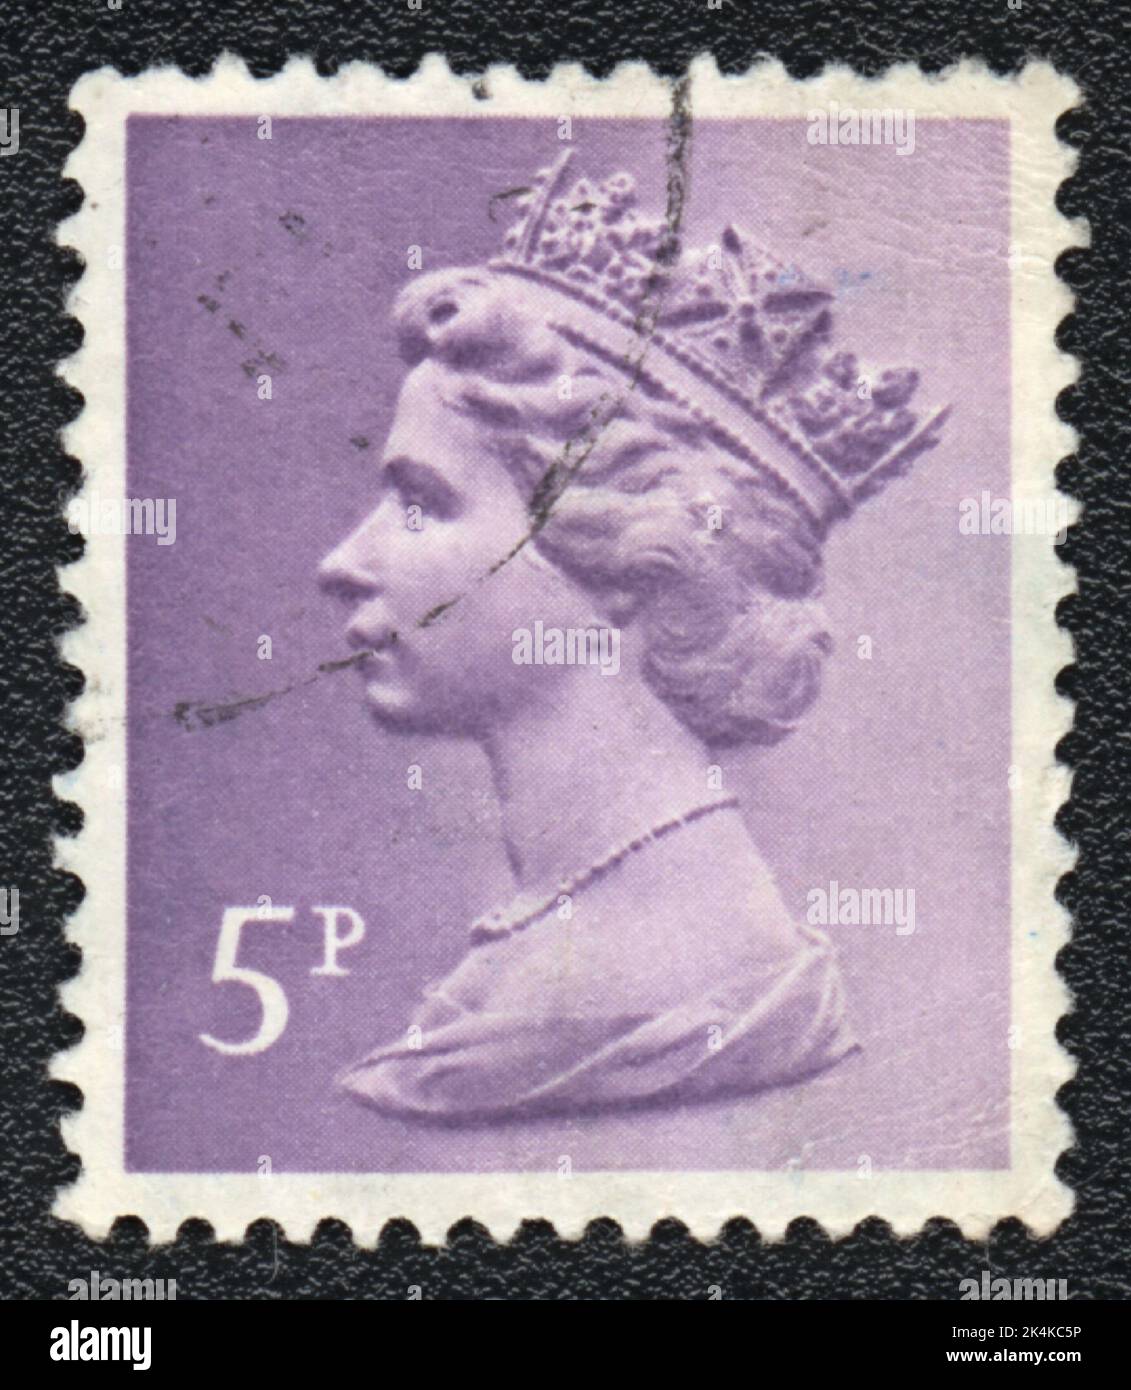 GRANDE-BRETAGNE - VERS 1978: Timbre imprimé par la Grande-Bretagne, montre Portrait de la reine Elizabeth 2, vers 1978 Banque D'Images